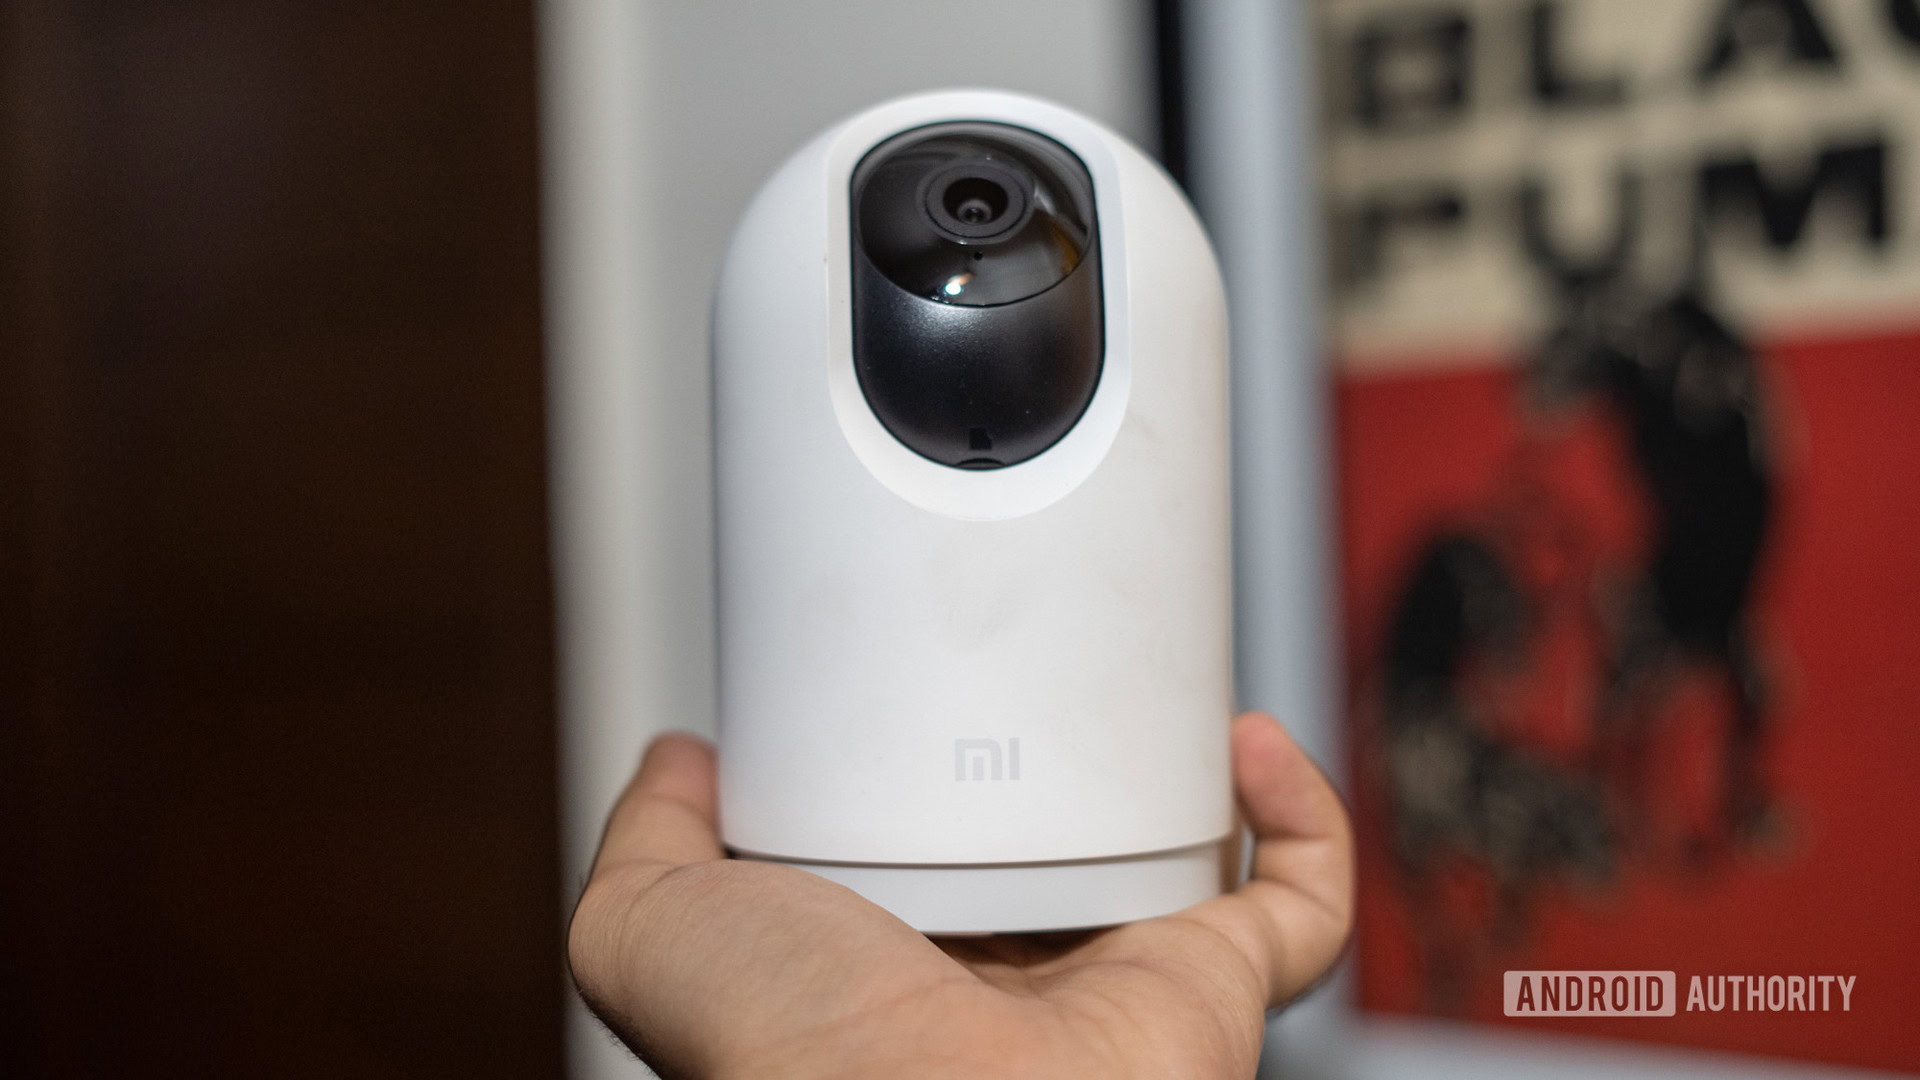 Nueva Xiaomi 360º Home Security Camera 1080p 2i: detección